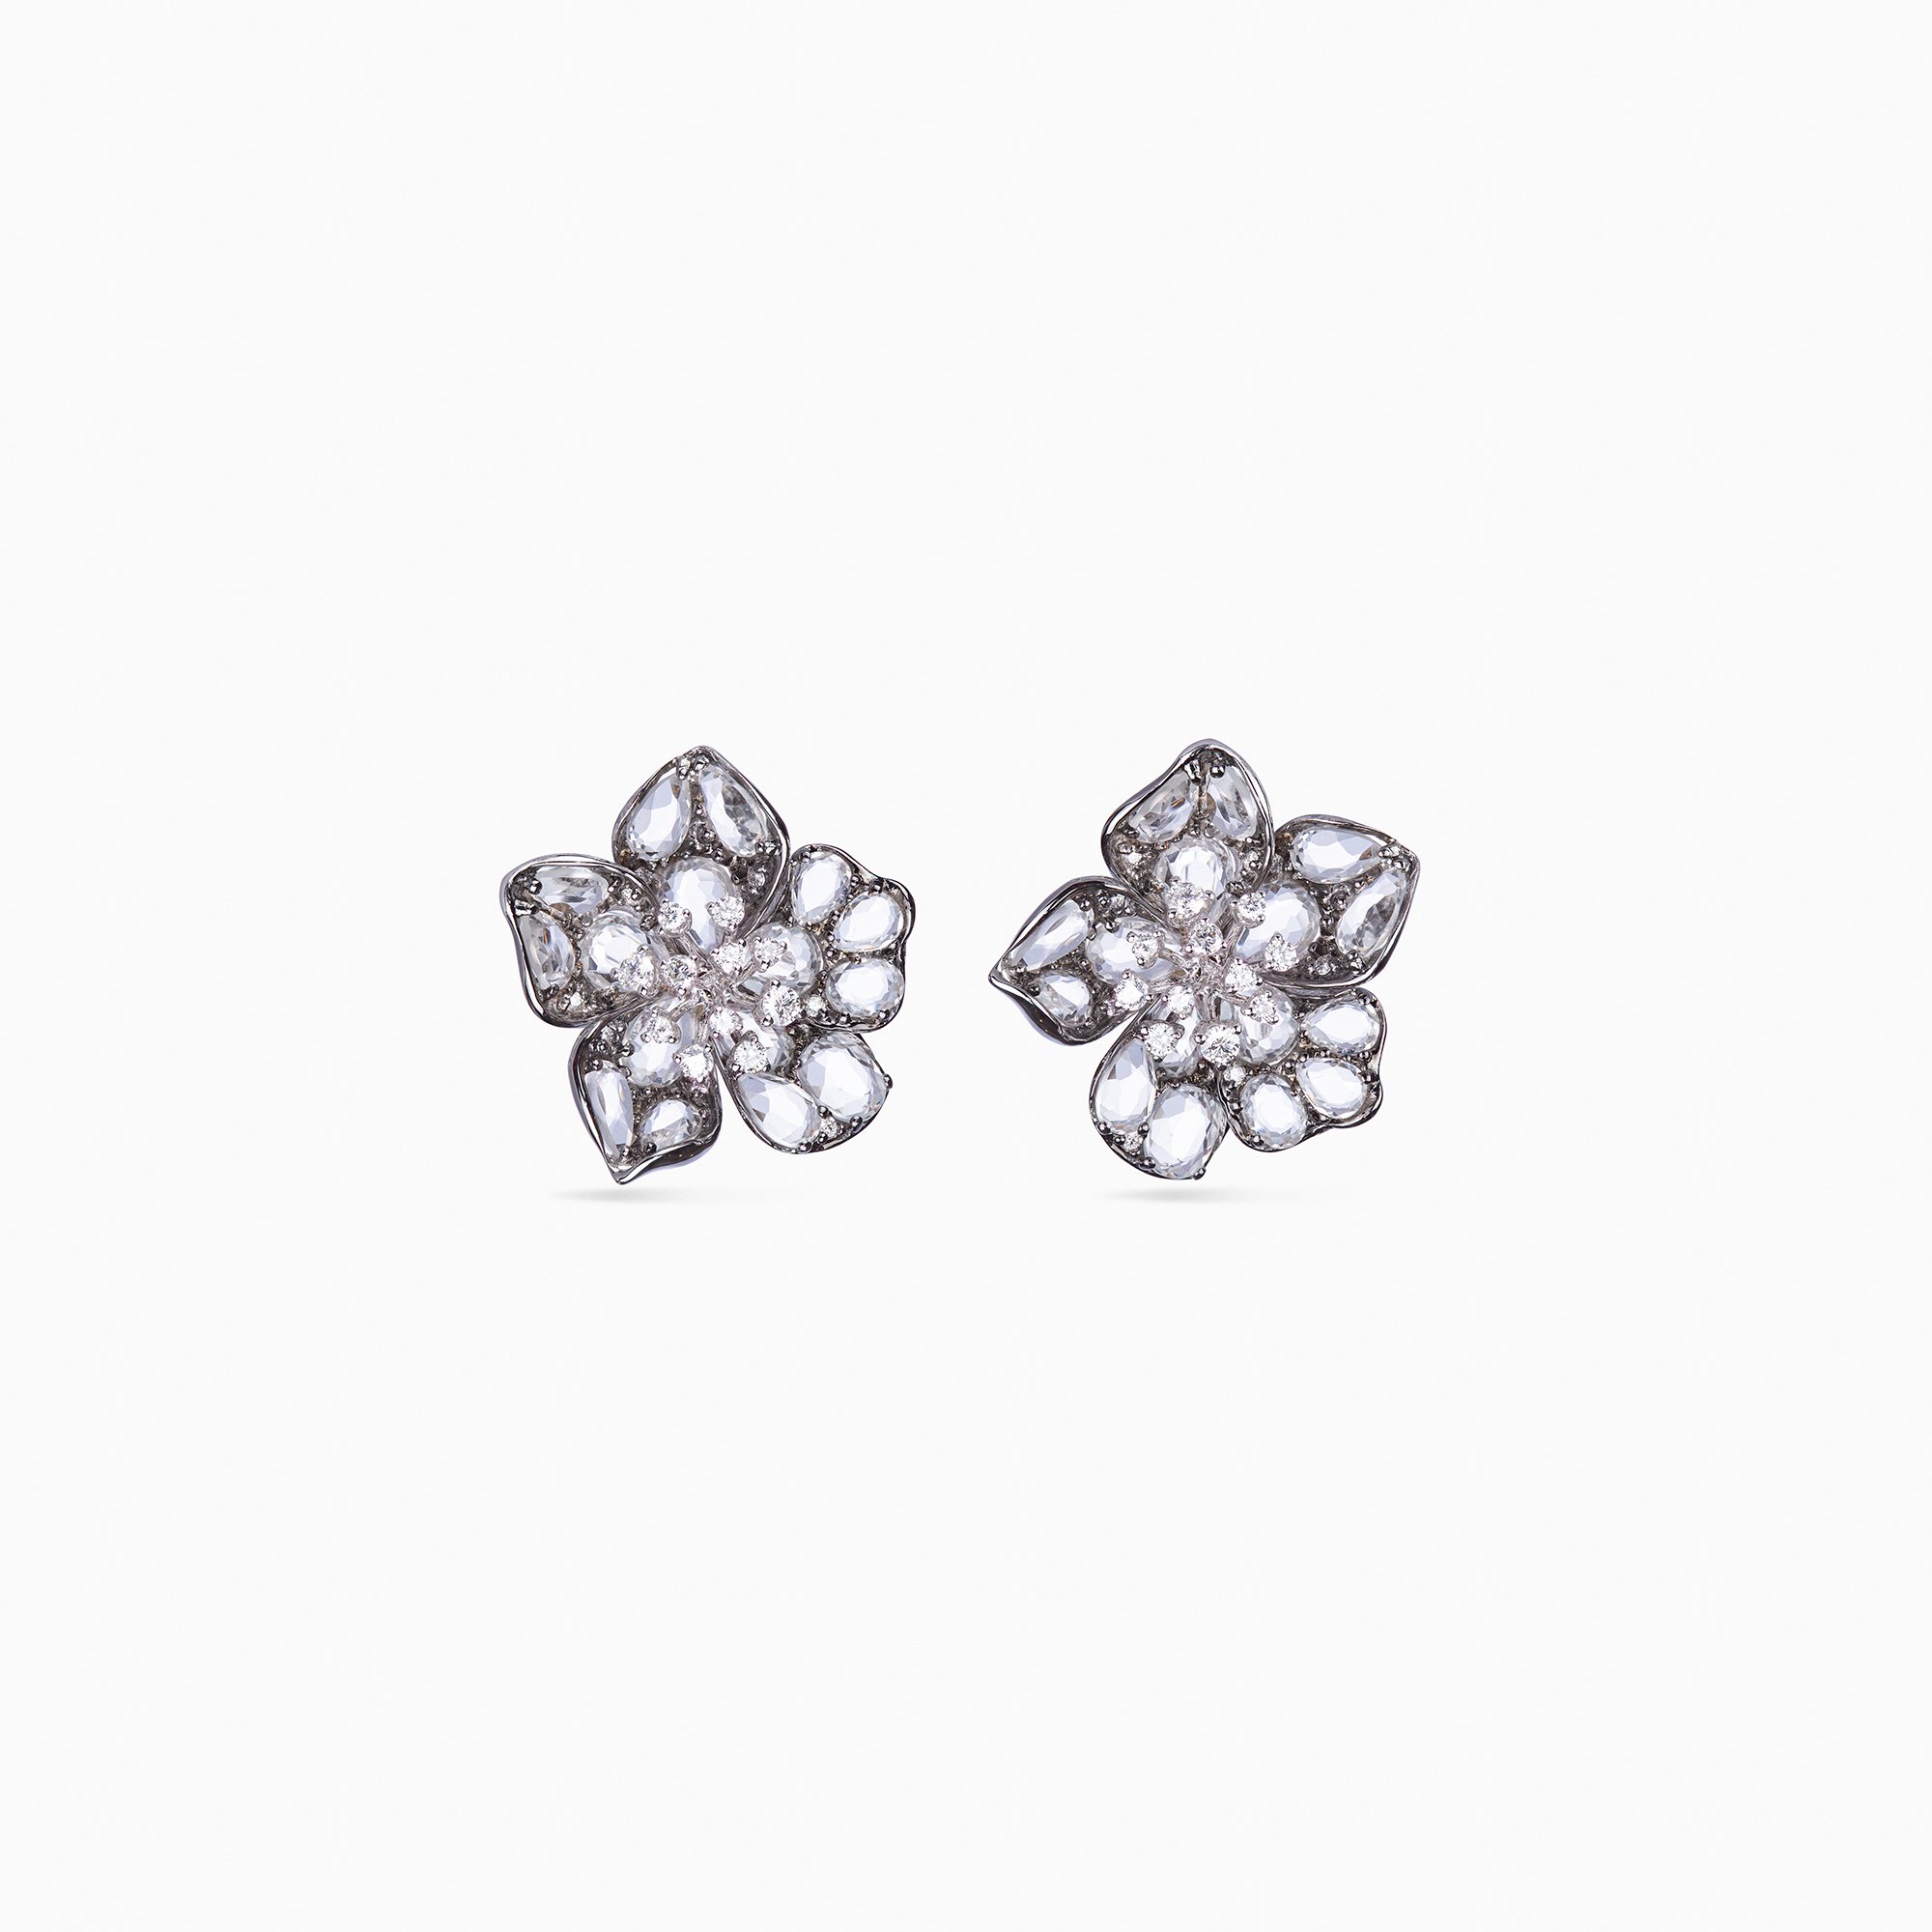 Delphinium Black Rhodium Diamond and Quartz Flower Earring.jpg